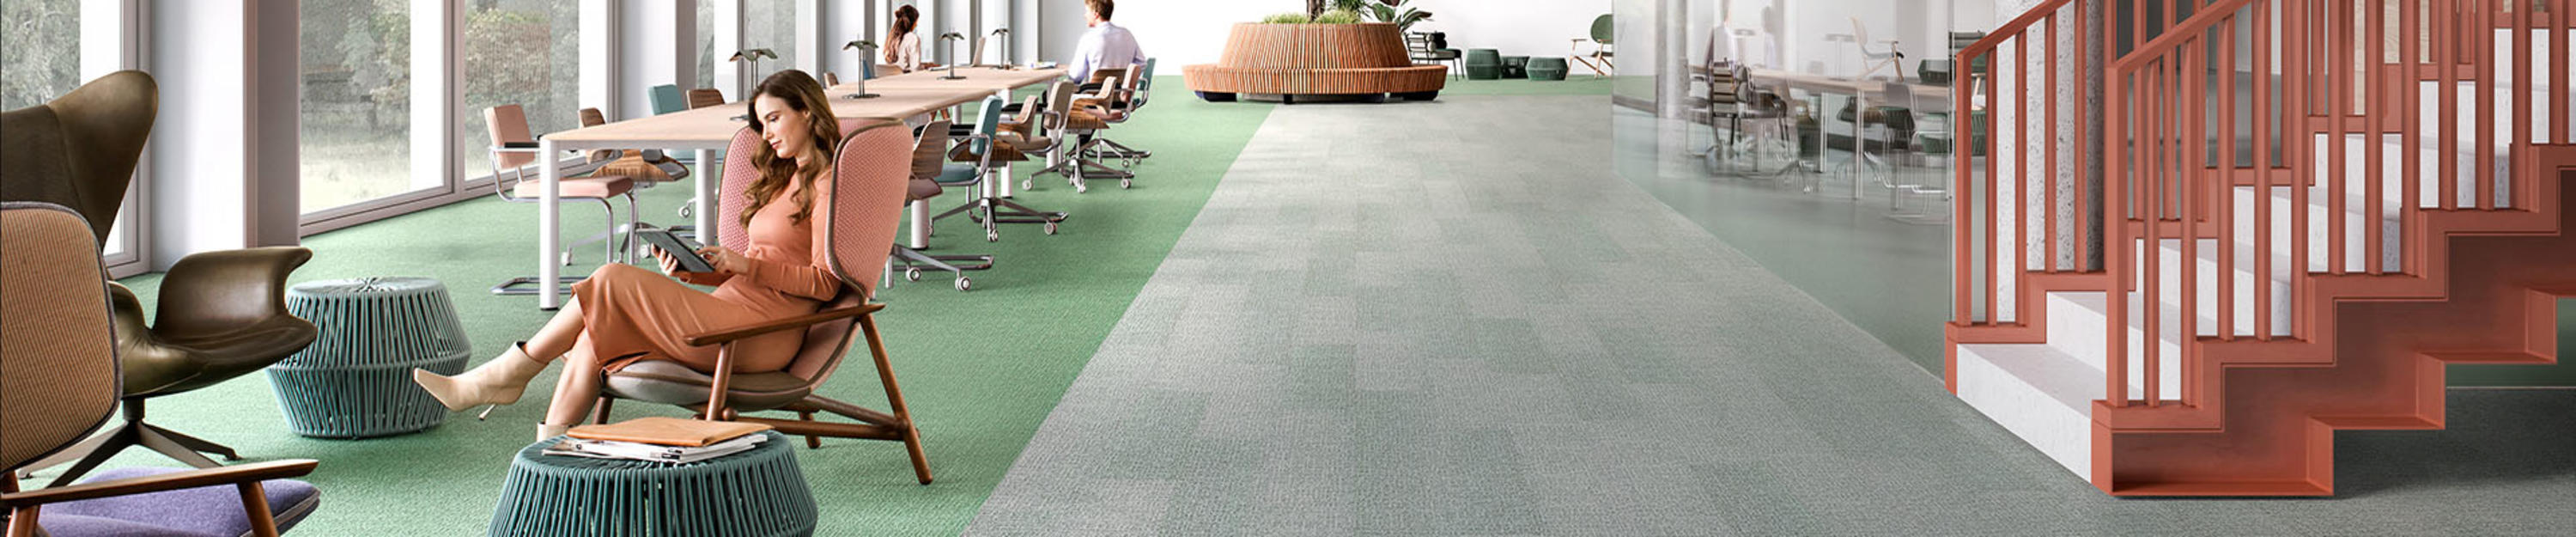 Carpet plank flooring in a open office landscape